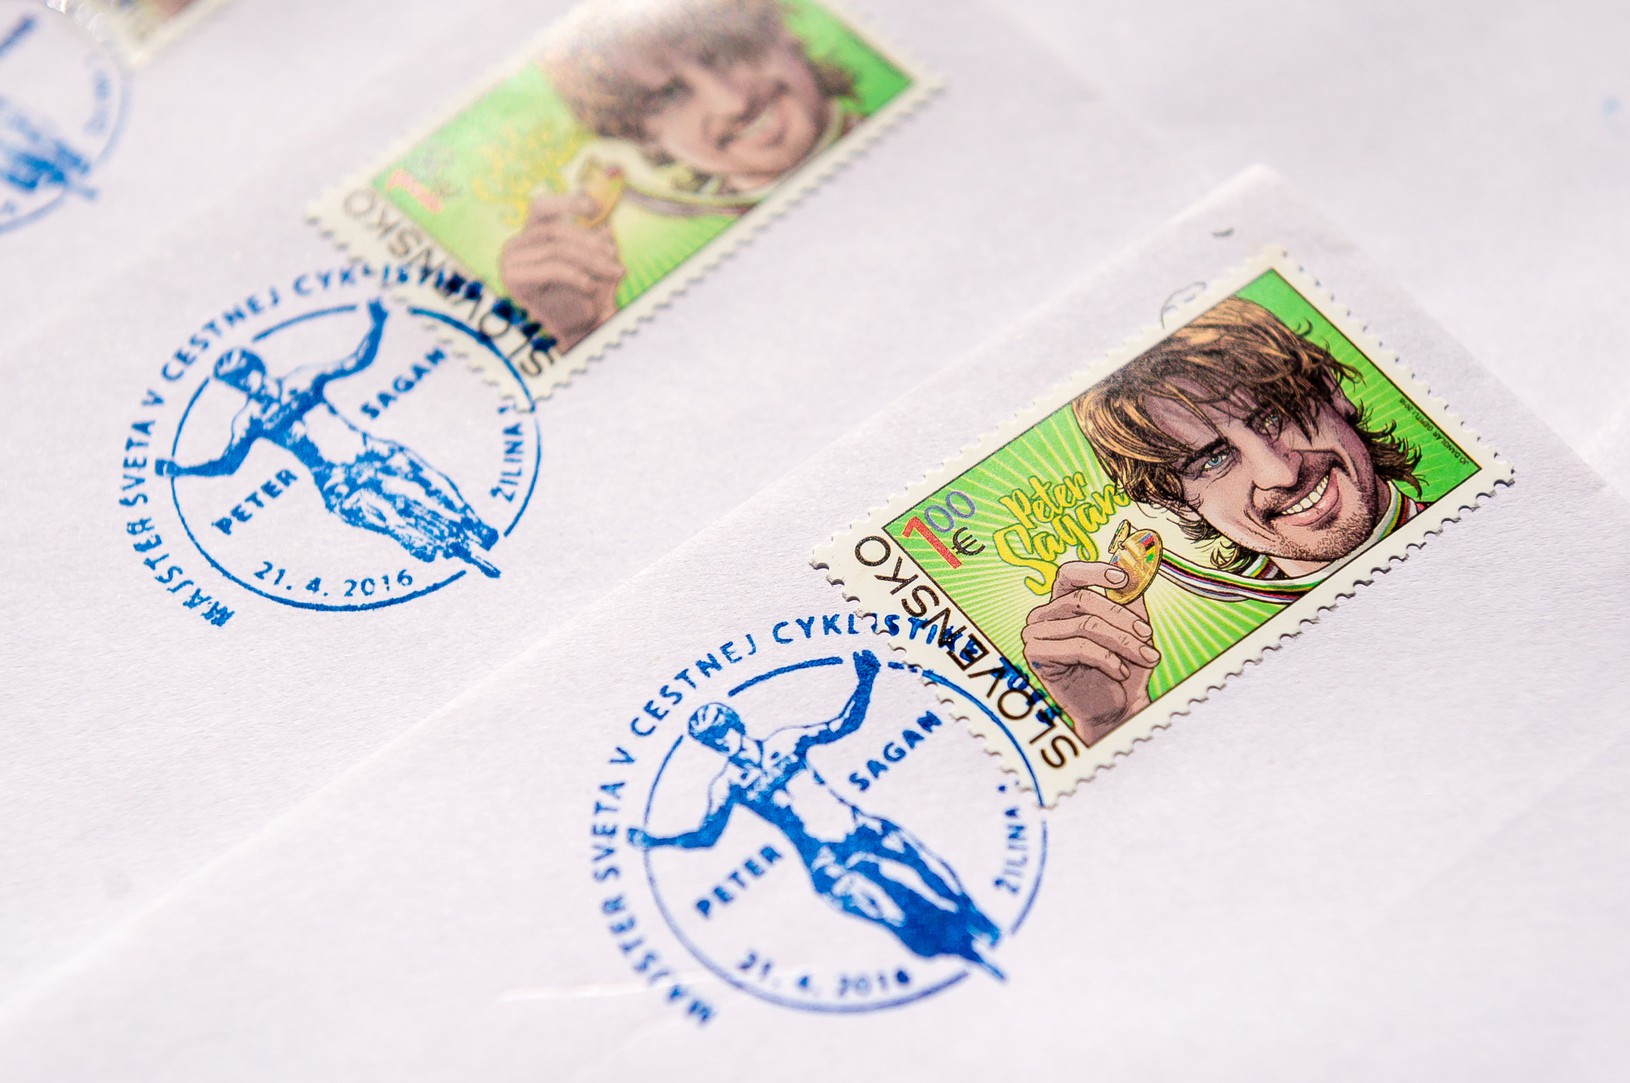 Poštová známka s podobizňou